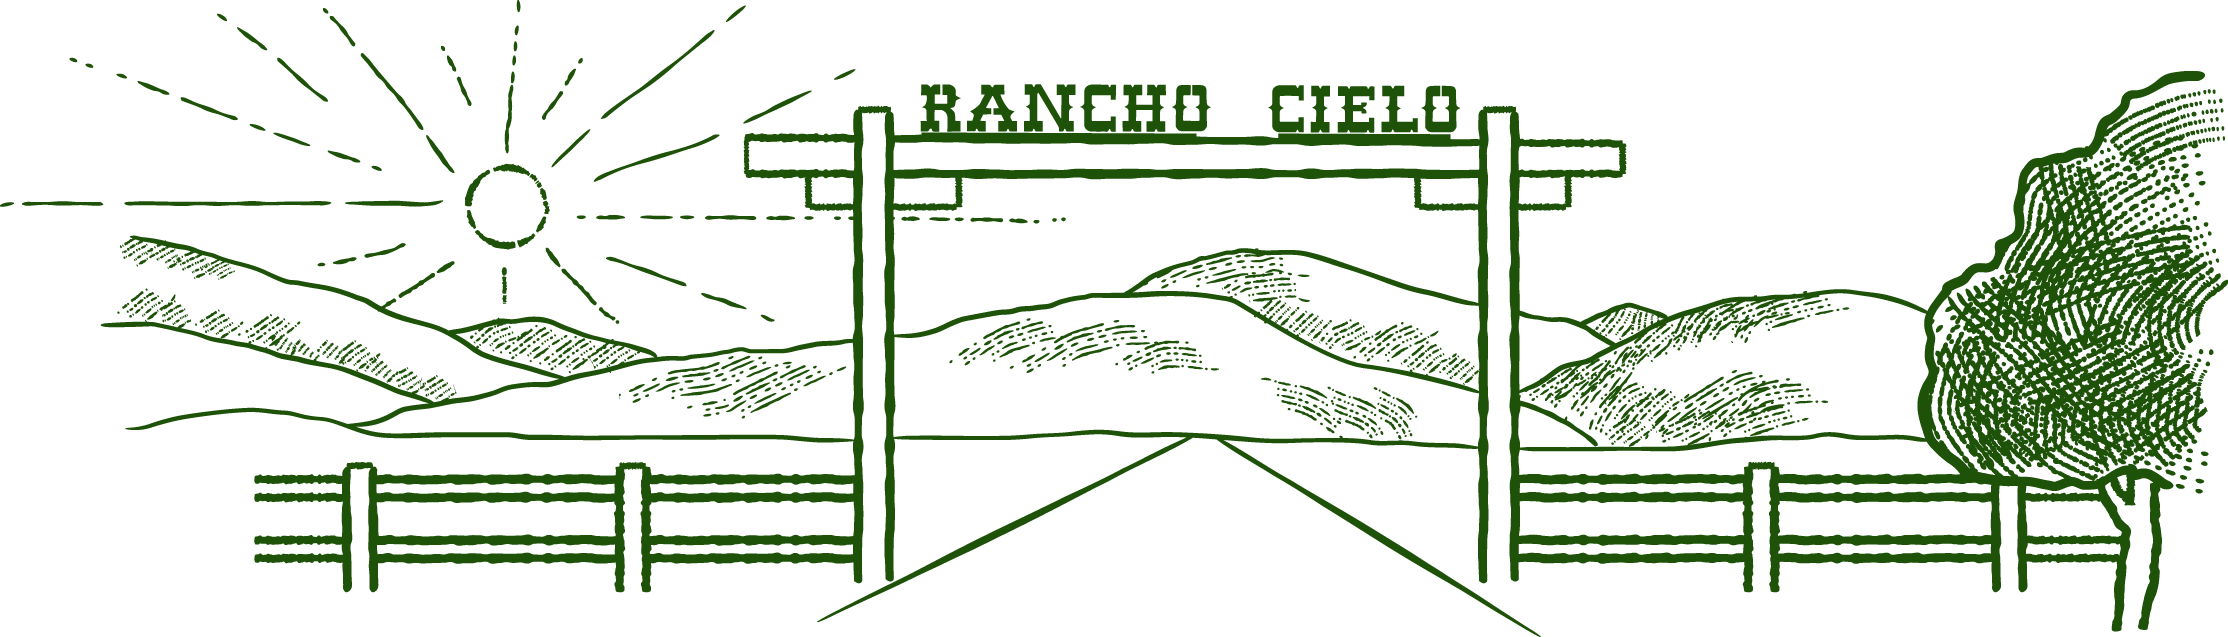 Menu Rancho Cielo Logo